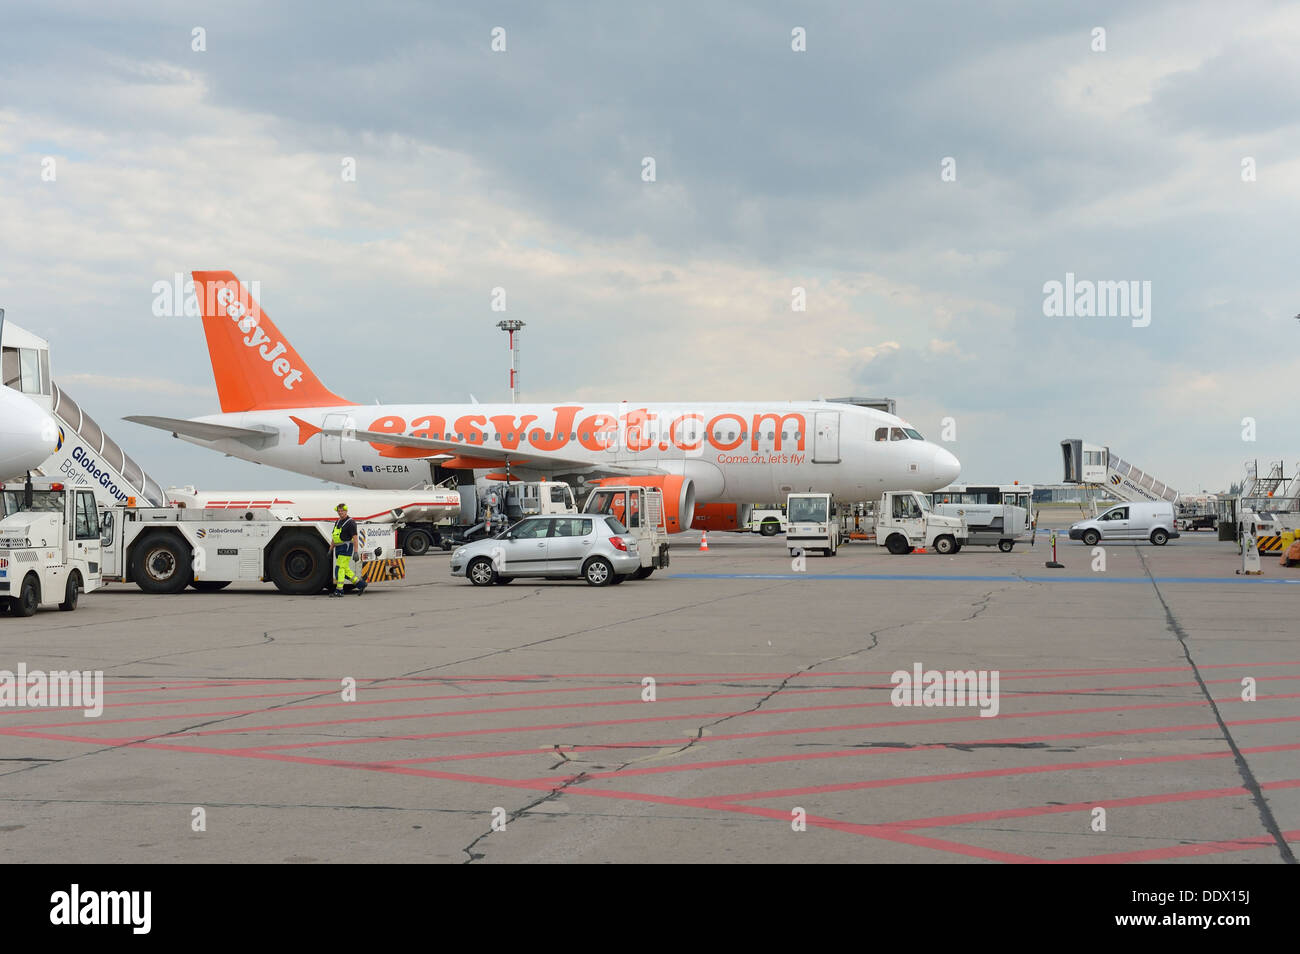 Les avions d'EasyJet à l'Aéroport Schoenefeld de Berlin Allemagne Banque D'Images